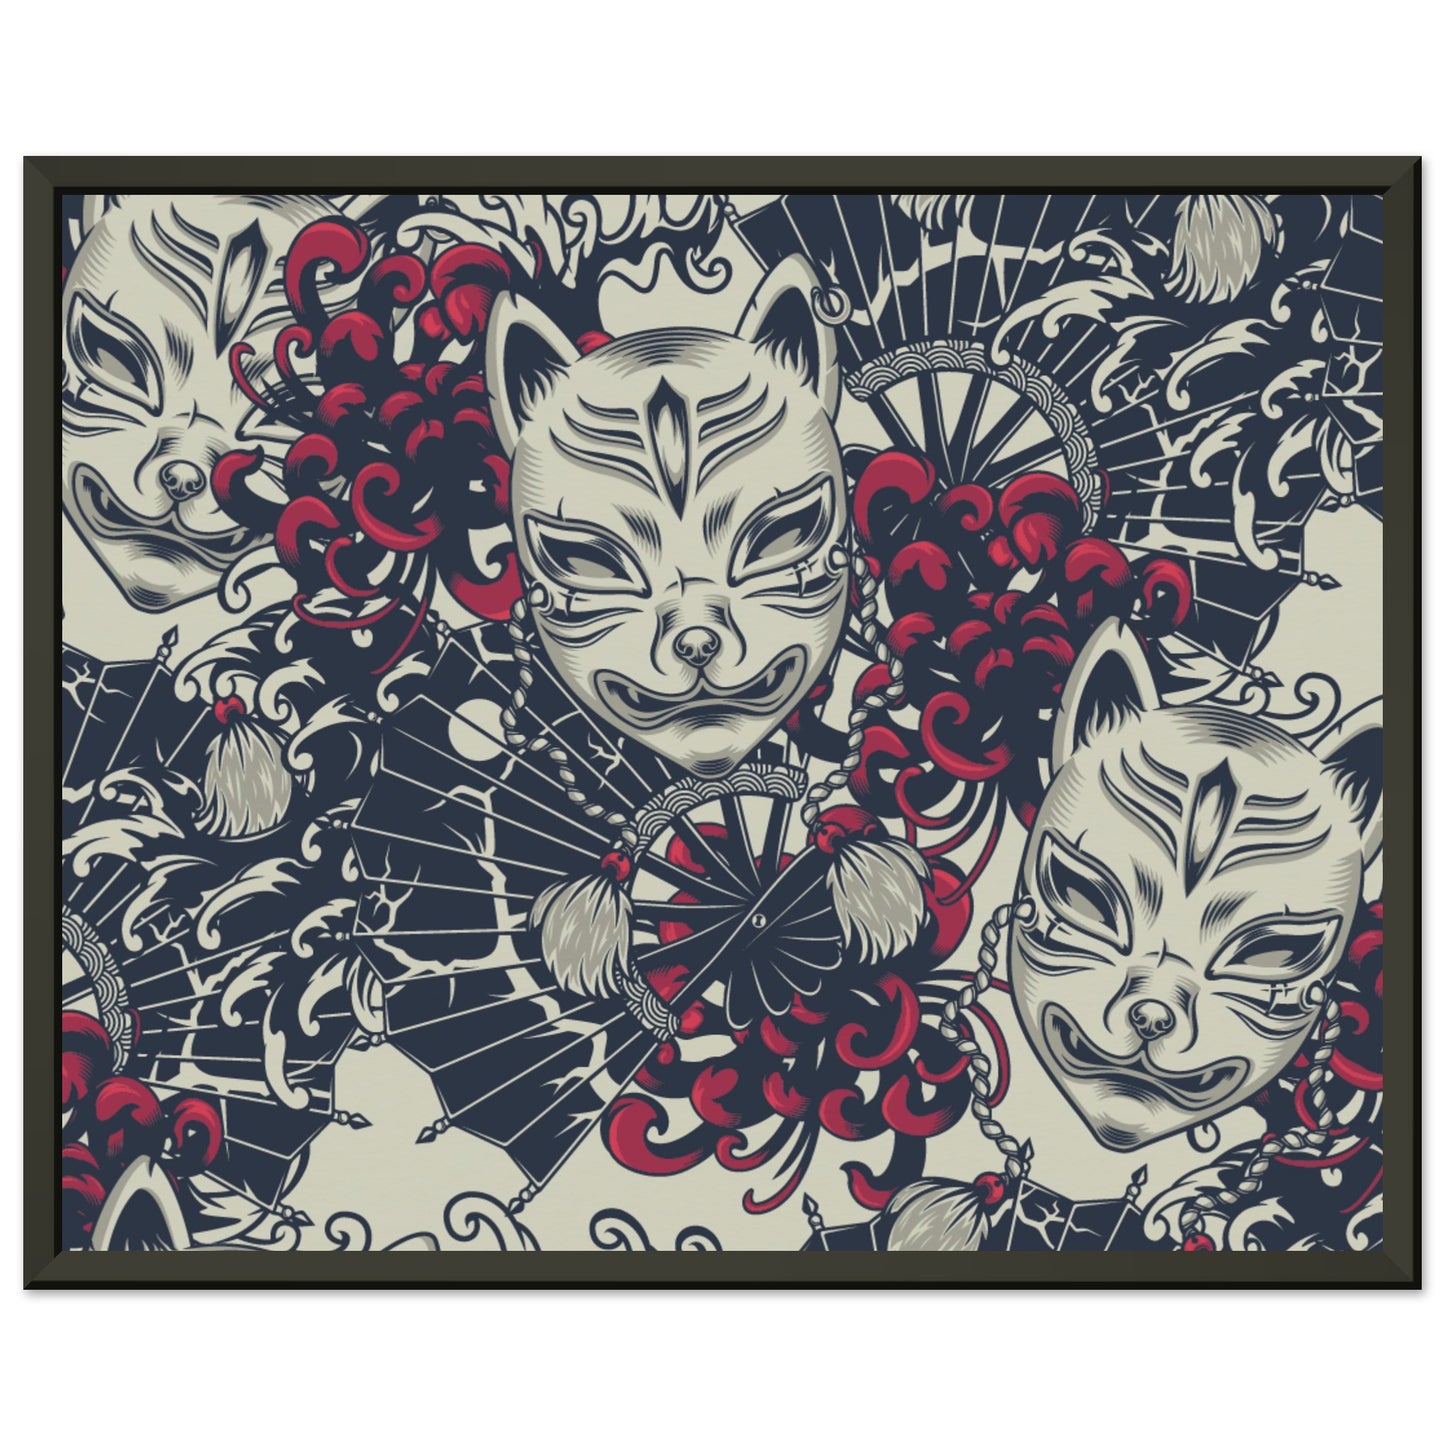 Kitsune mask pattern